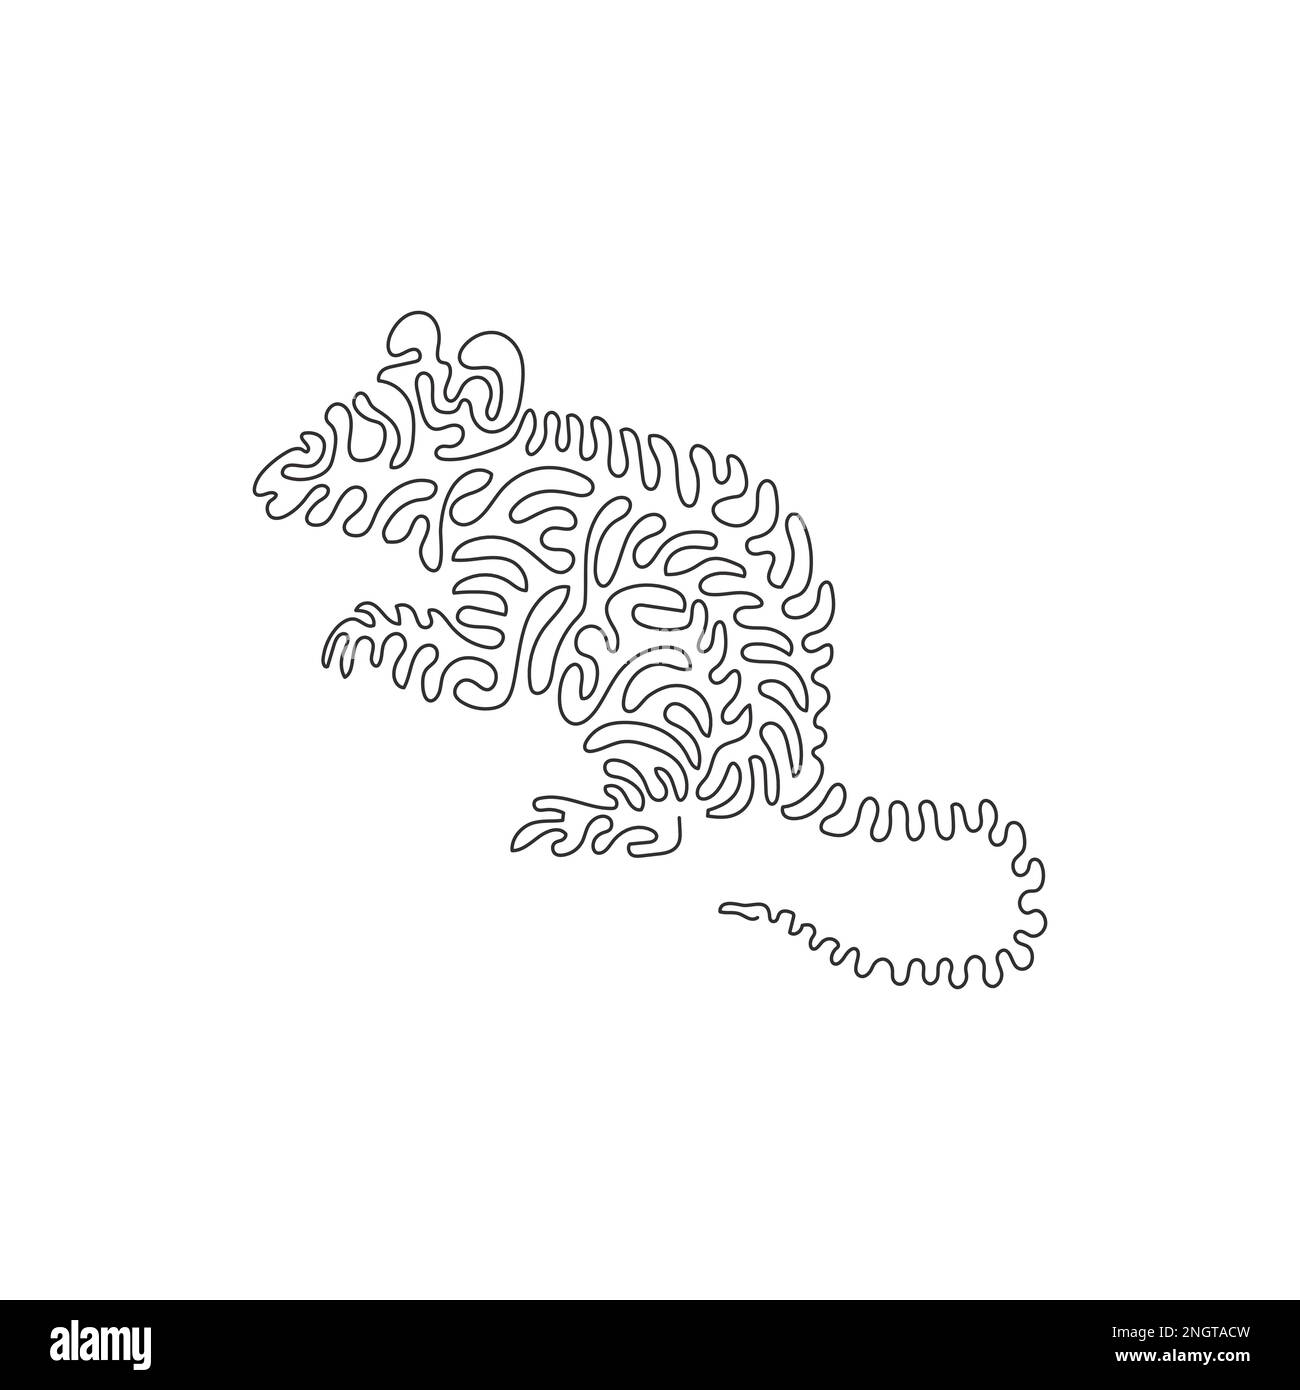 Simple tourbillon ligne continue dessin d'art abstrait souris mignonne Dessin en ligne continue dessin graphique dessin vectoriel style d'illustration de la souris de vole frisky Illustration de Vecteur